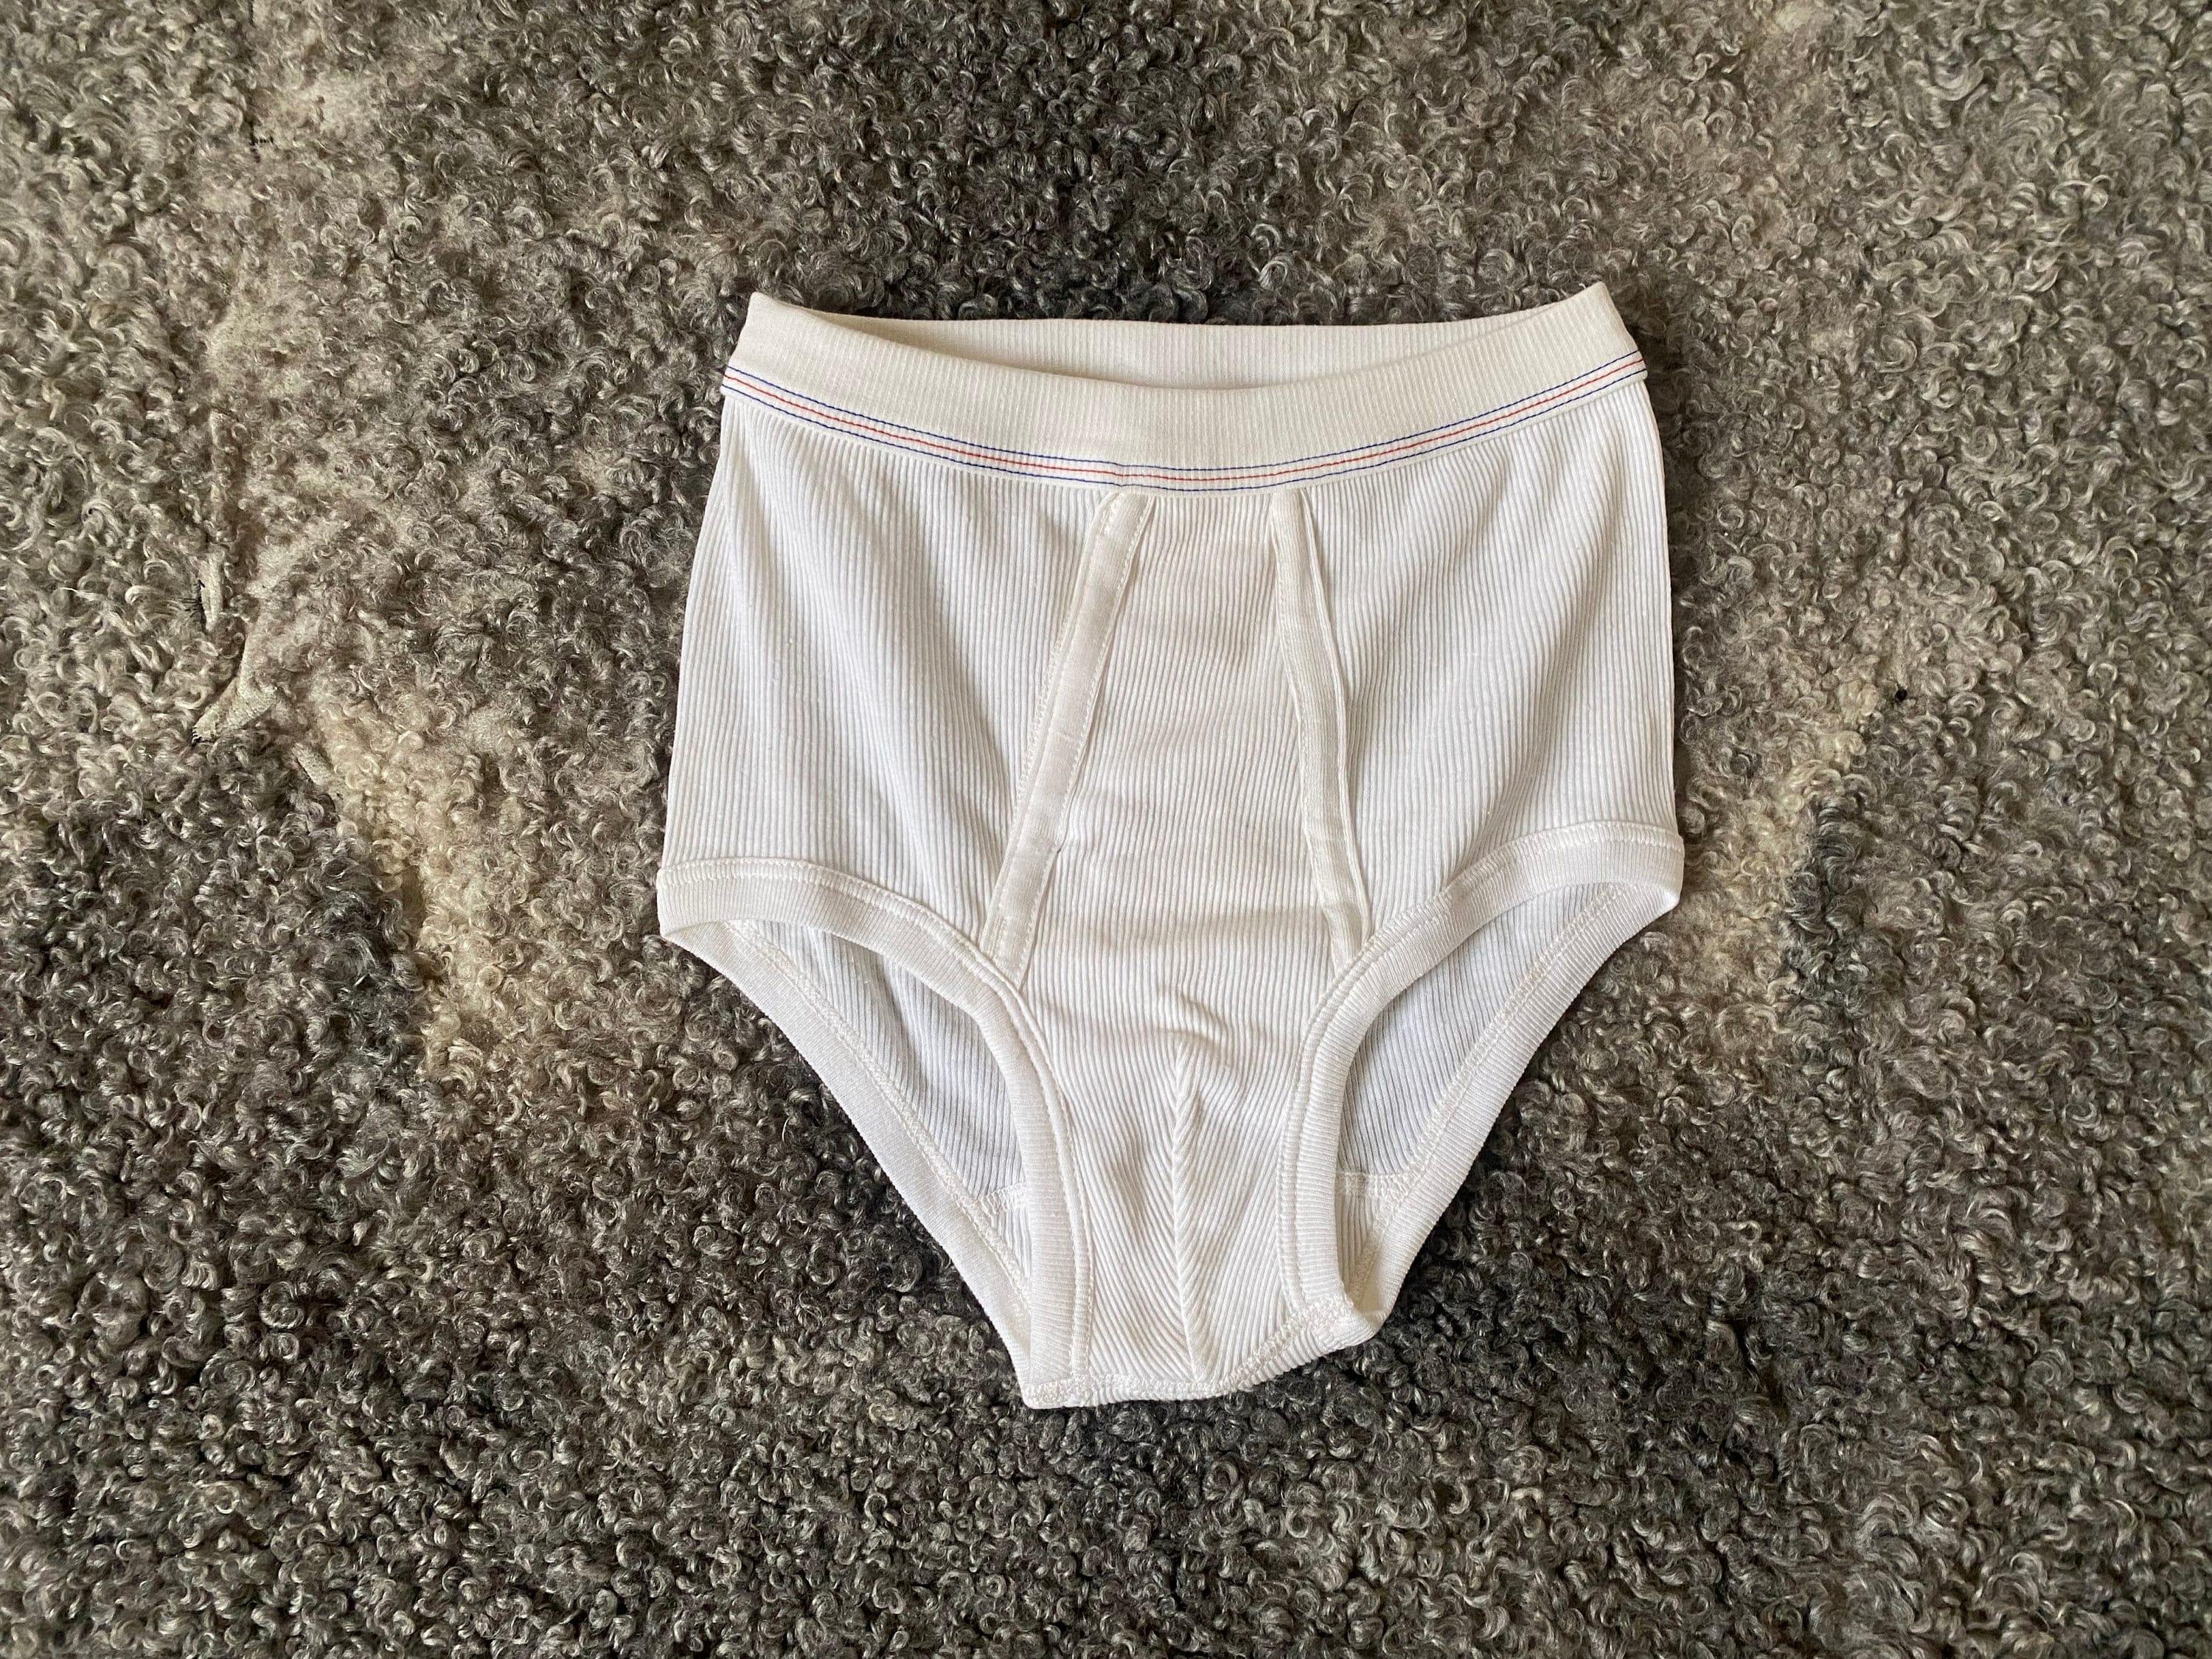 Vintage Men White Underpants, Ribbed Cotton Retro Undies High Waist Grandpa  Style Underwear 80s Fschion 